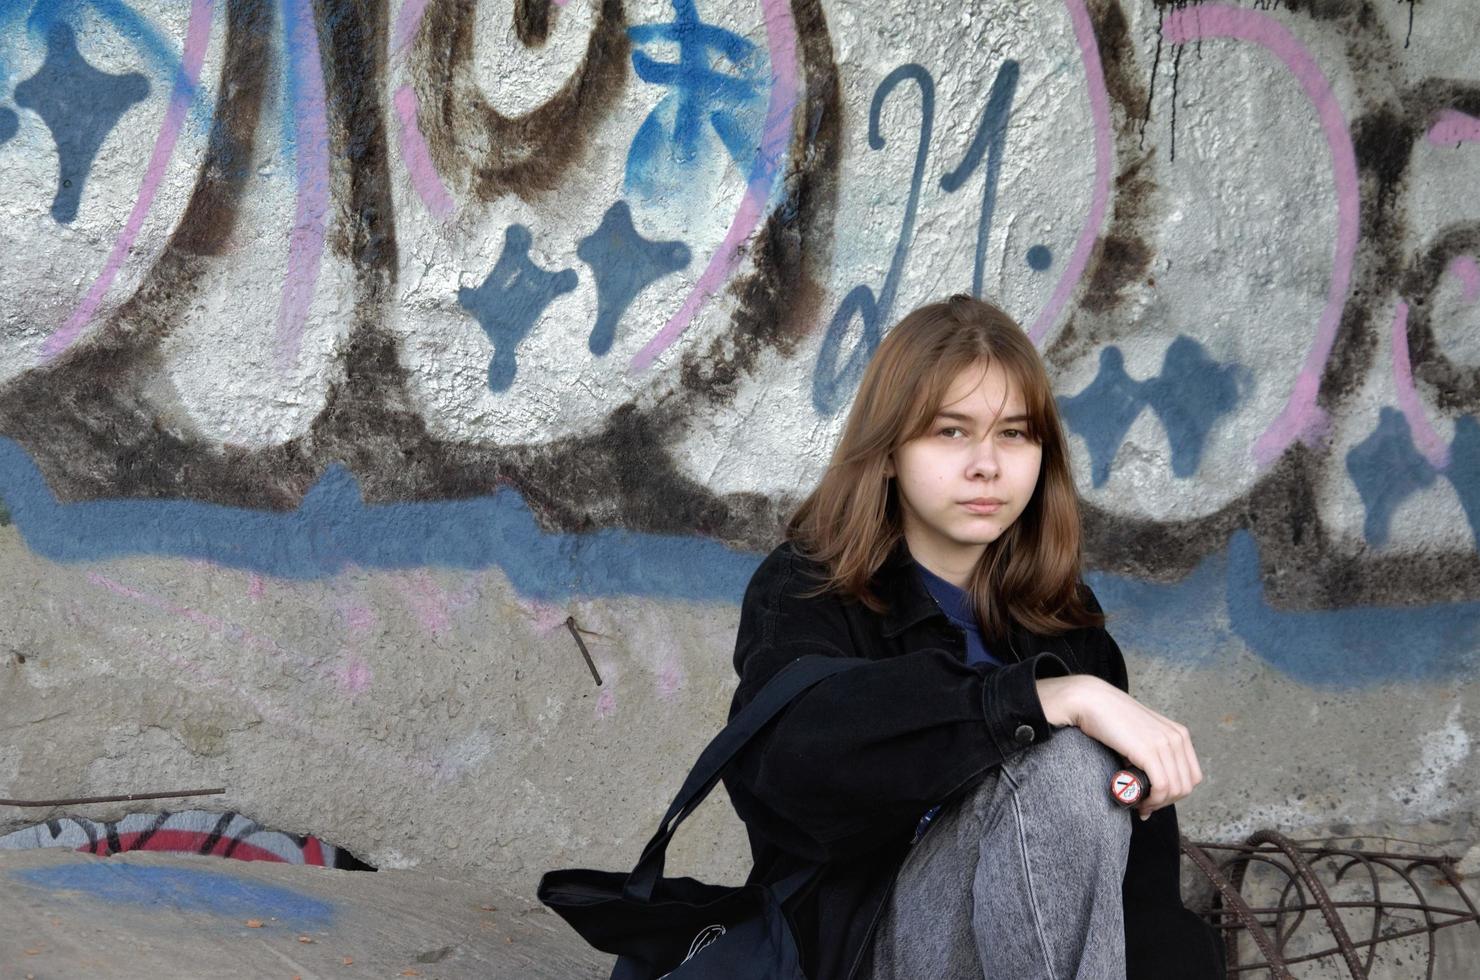 St. petersbourg, russie, 06.01.2022. une adolescente est assise dans un bâtiment abandonné peint de graffitis et fume photo